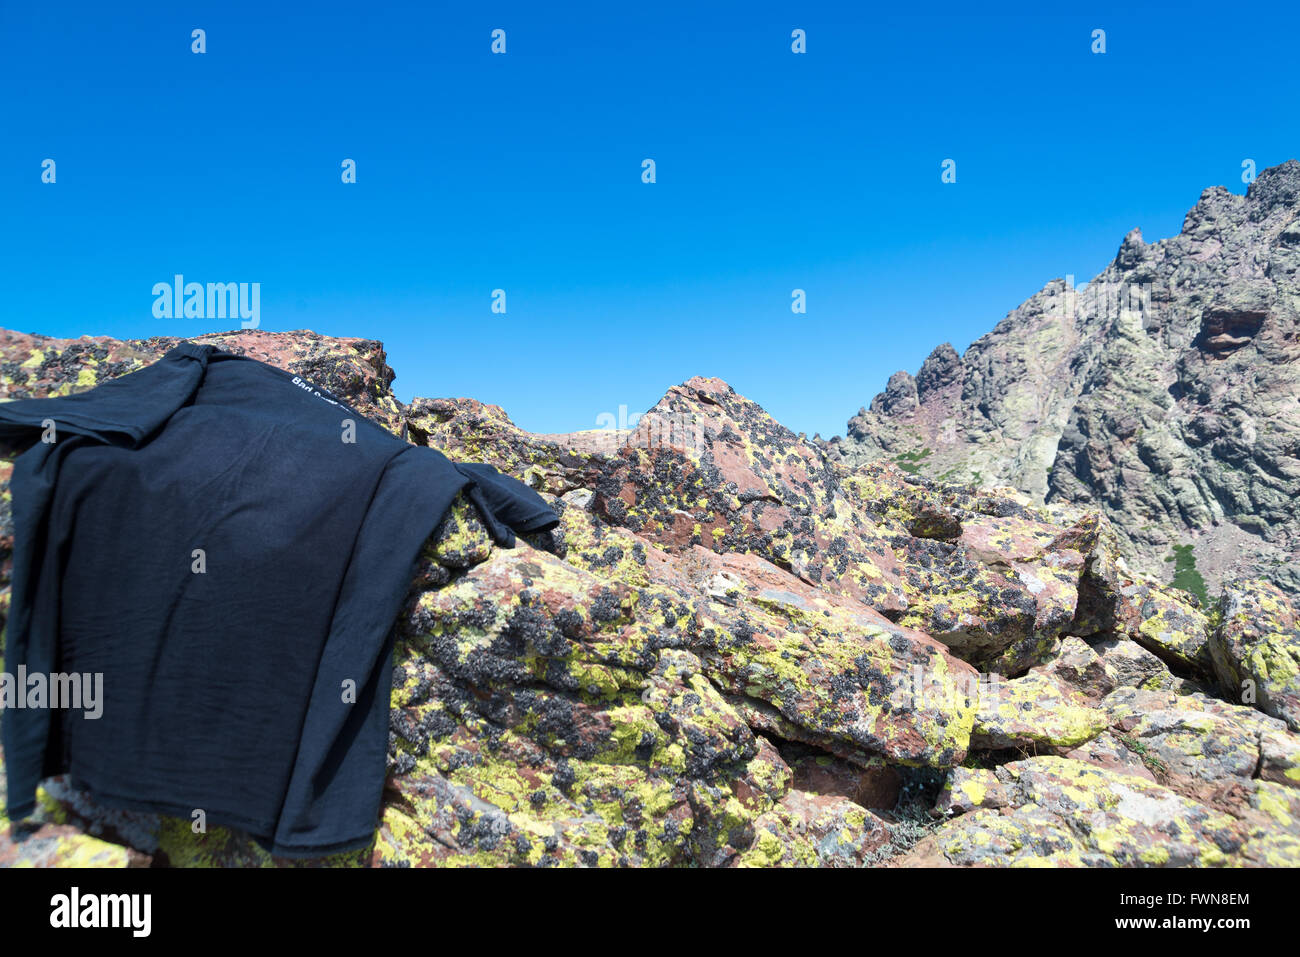 Warten auf das T-shirt zum Trocknen in die Sonne auf den Monte Cinto, der höchste Berg von Korsika, Frankreich Stockfoto